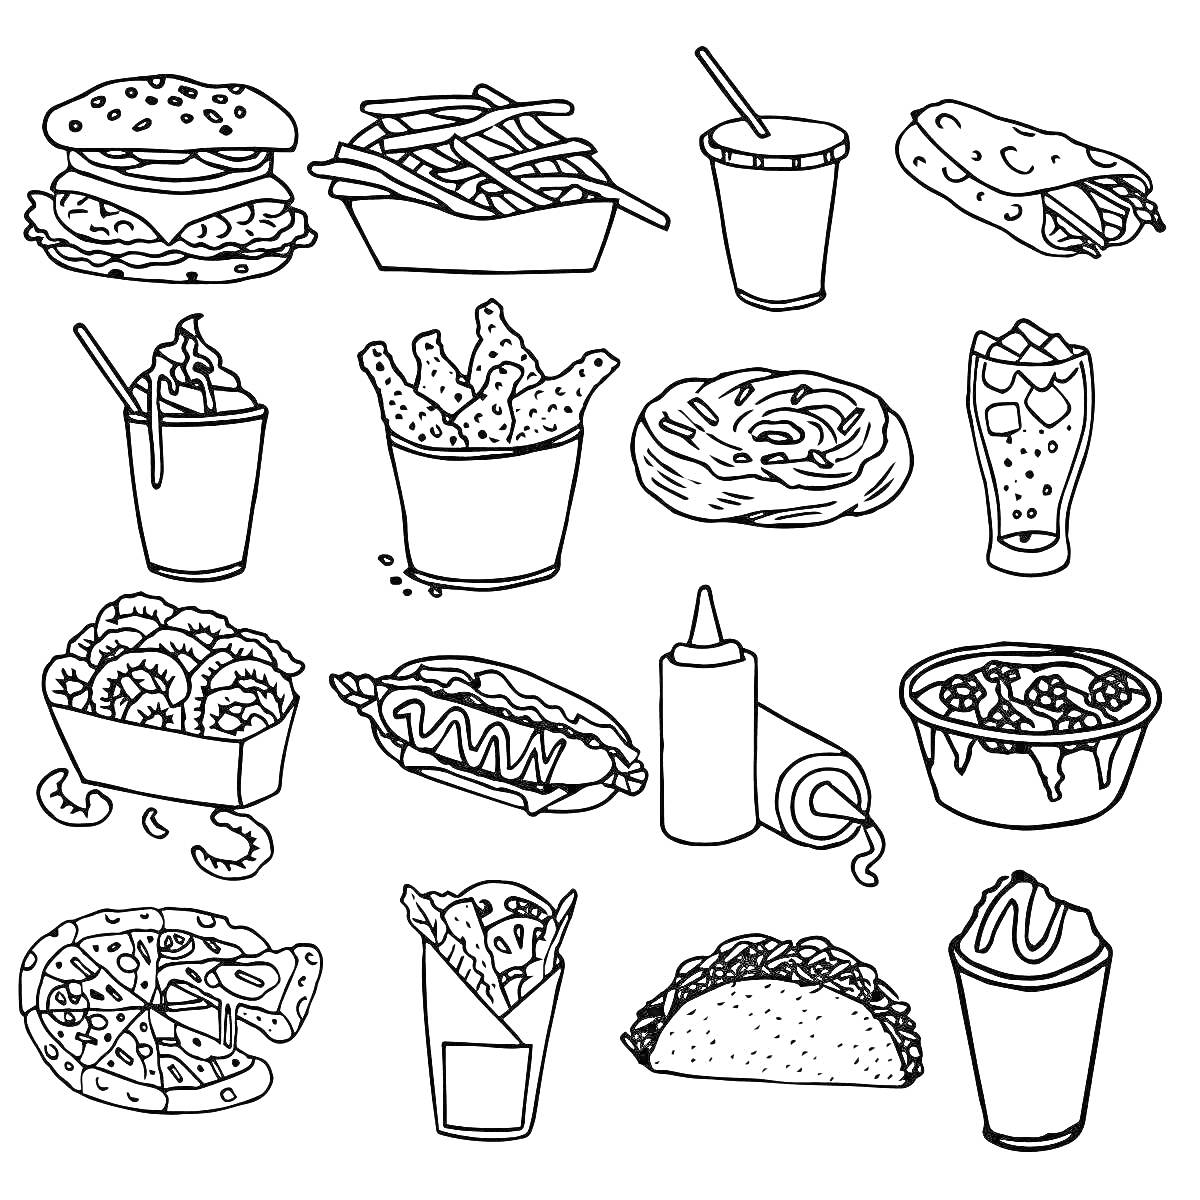 Раскраска Ассортимент фастфуда: бургер, картофель фри, напиток с трубочкой, шаурма, напиток с кусочками льда, крылышки, пончик, газировка, луковые кольца, хот-дог, соус, тарт с ягодами, пицца, картофель фри в стакане, тако, молочный коктейль